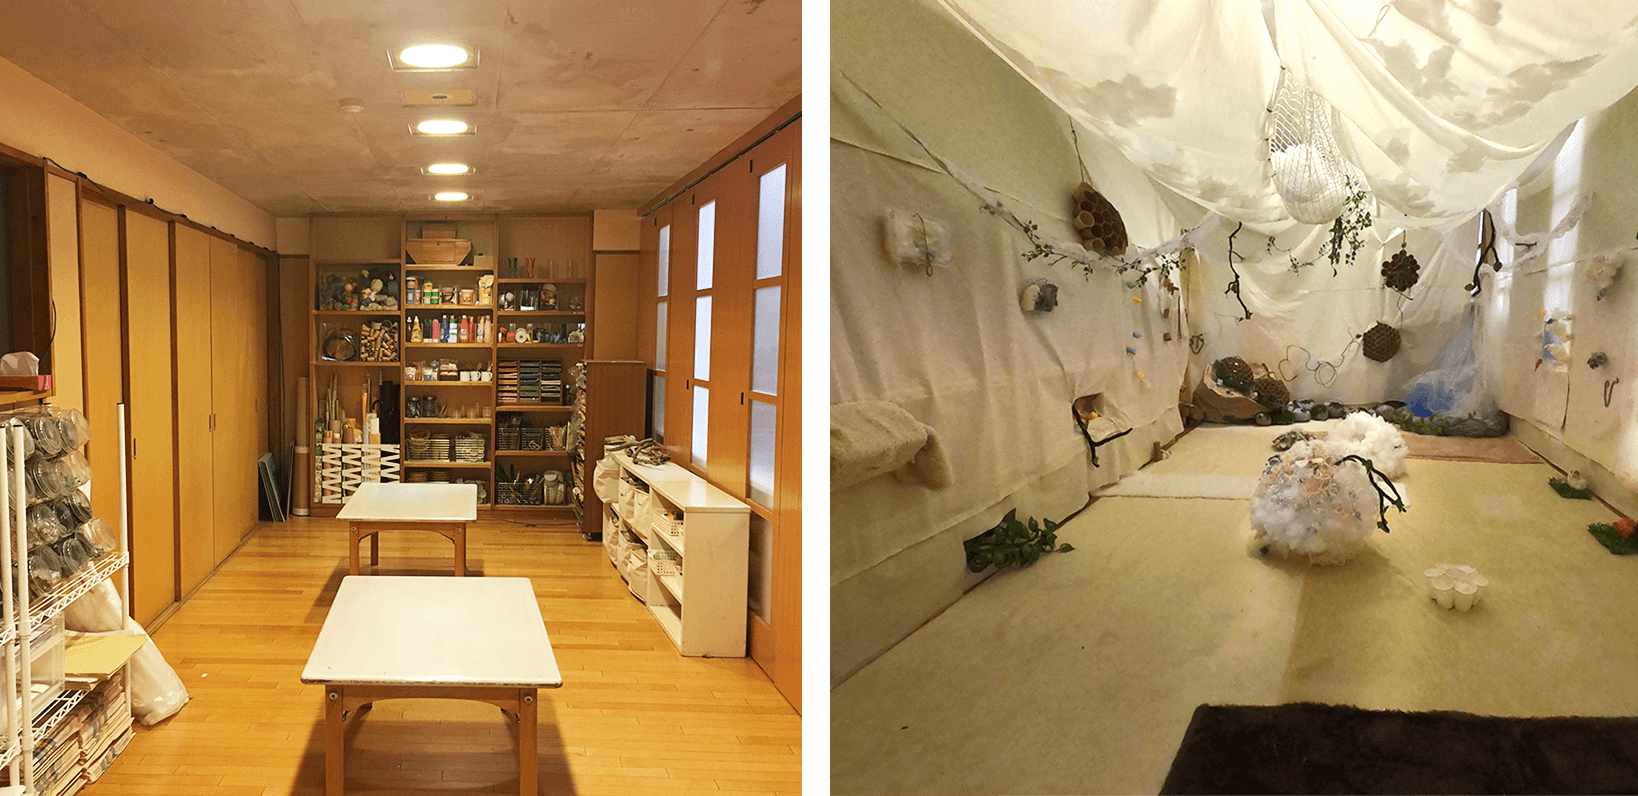 コロナ禍以前に開催していたワークショップ「ふわふわルーム」の元の部屋（左）と改装後（右）